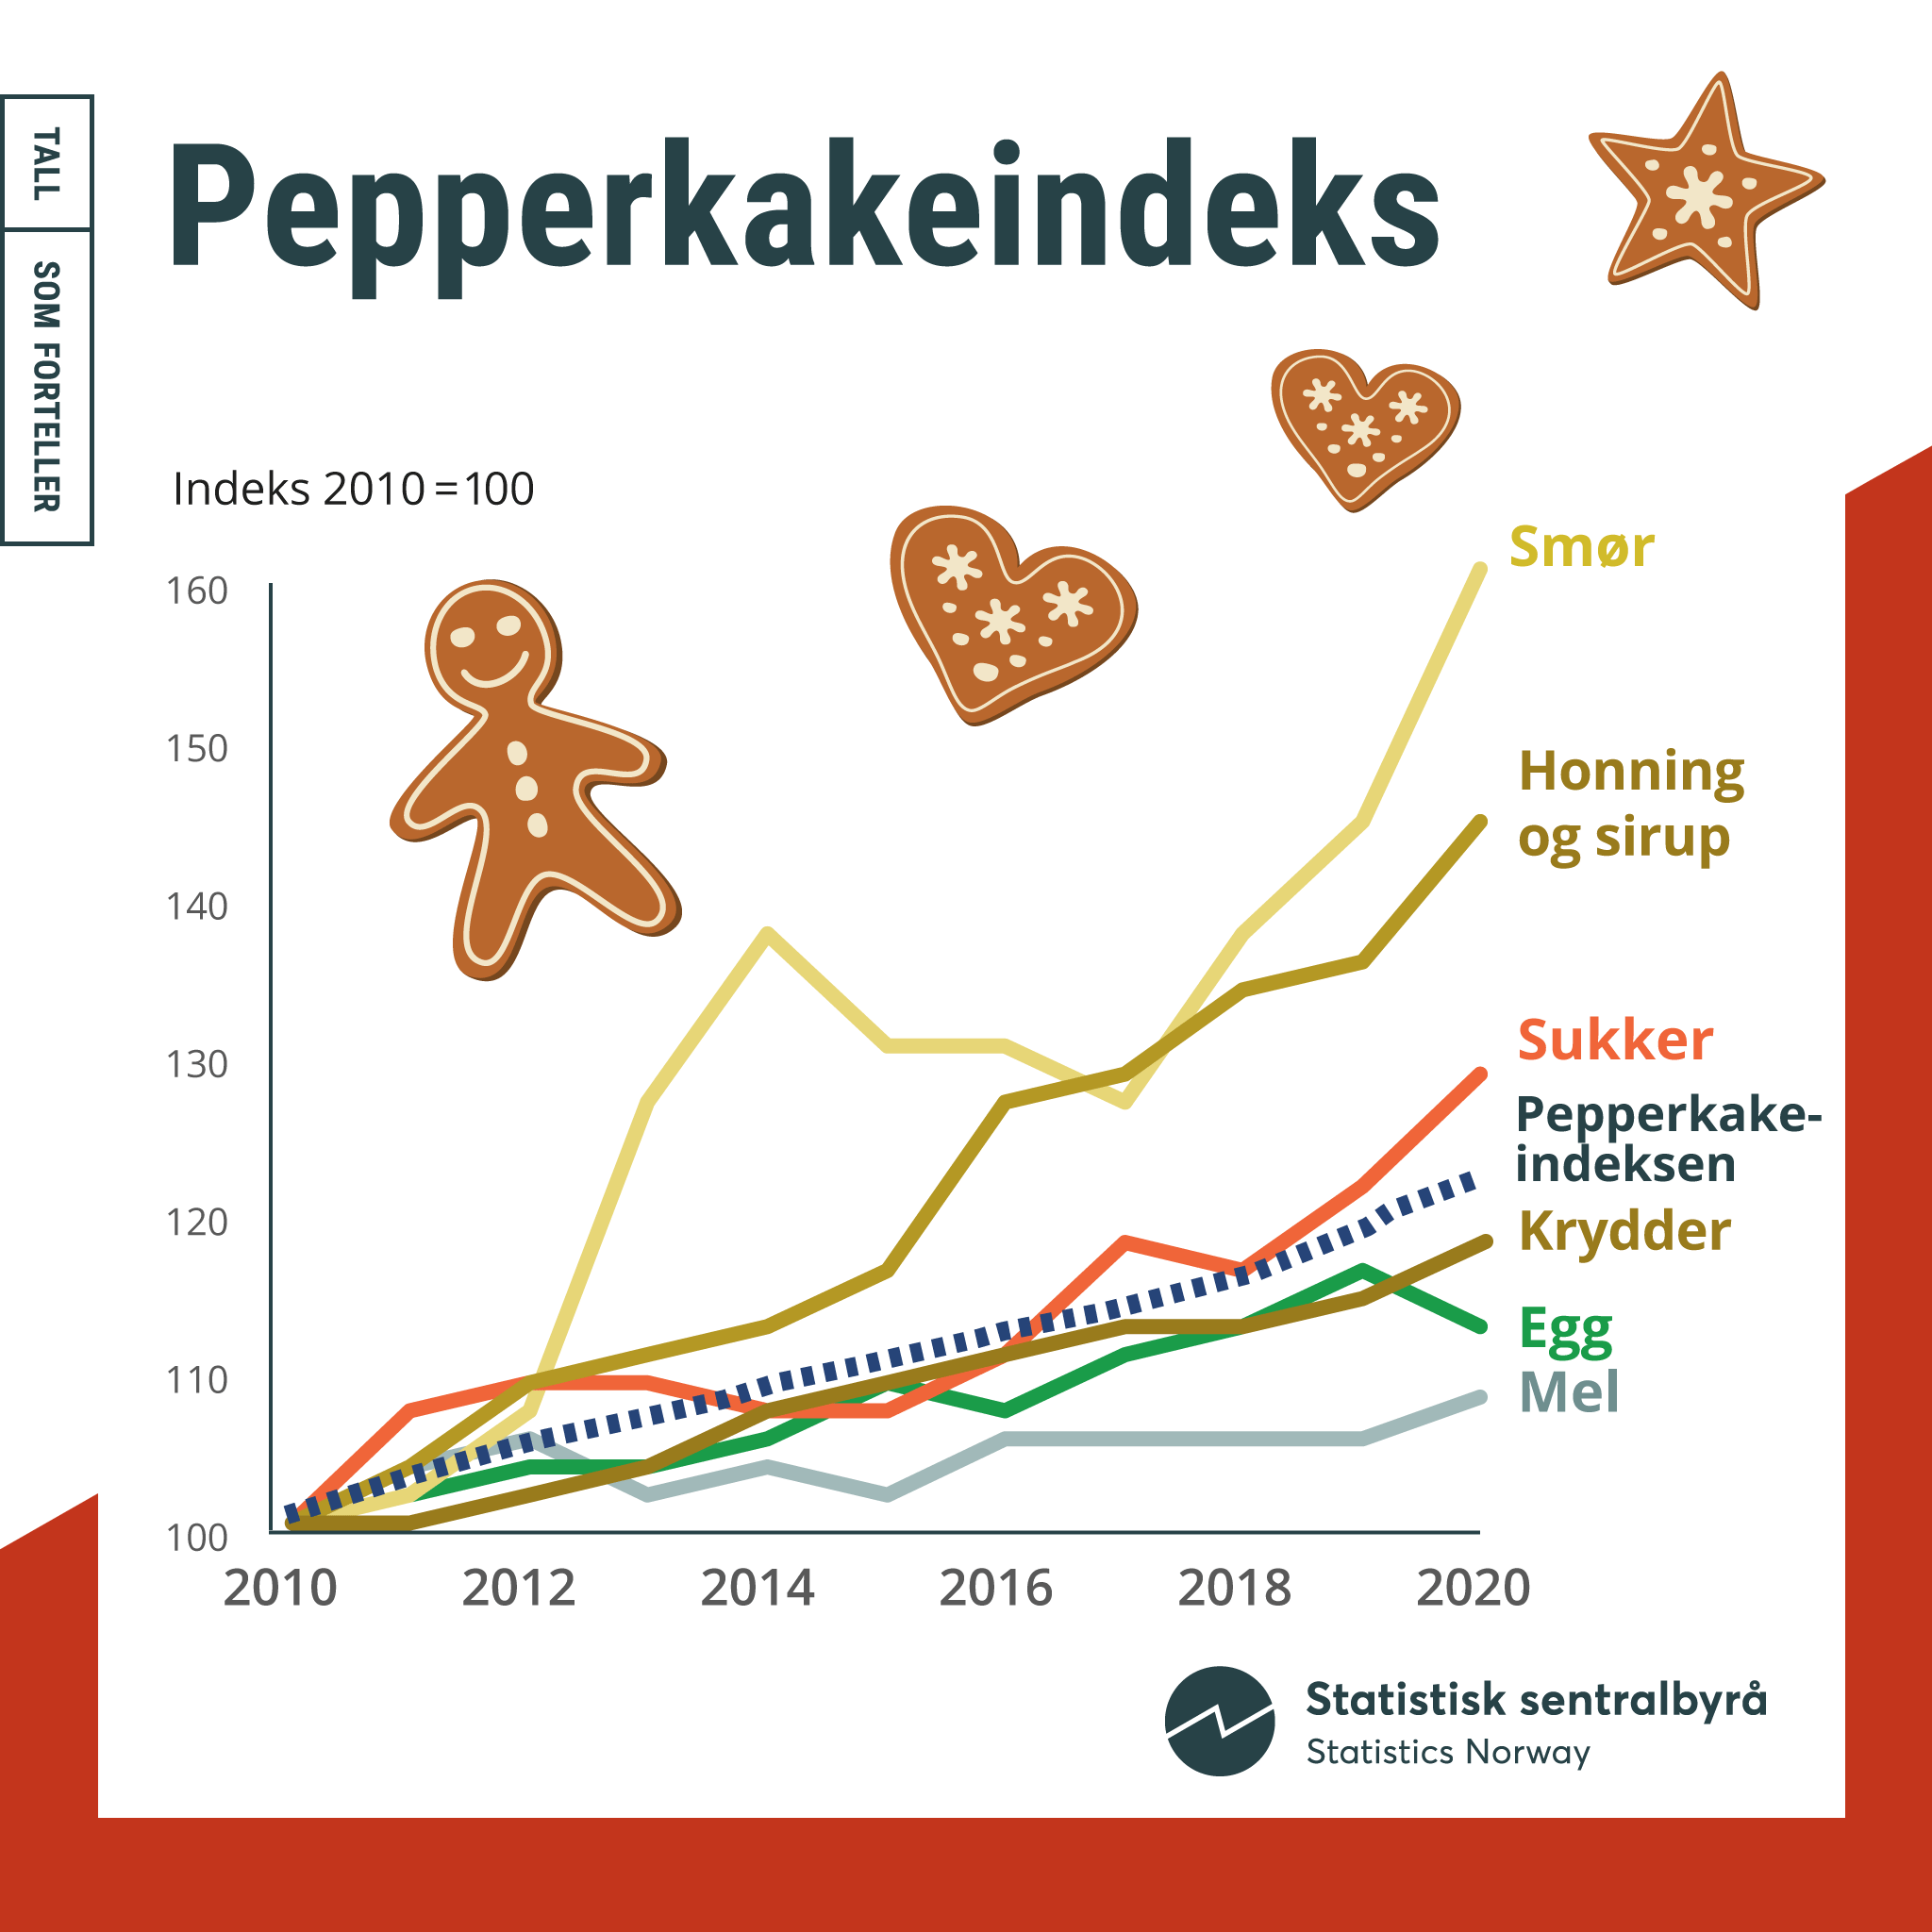 Pepperkakeindeks 2010-2020, infografikk